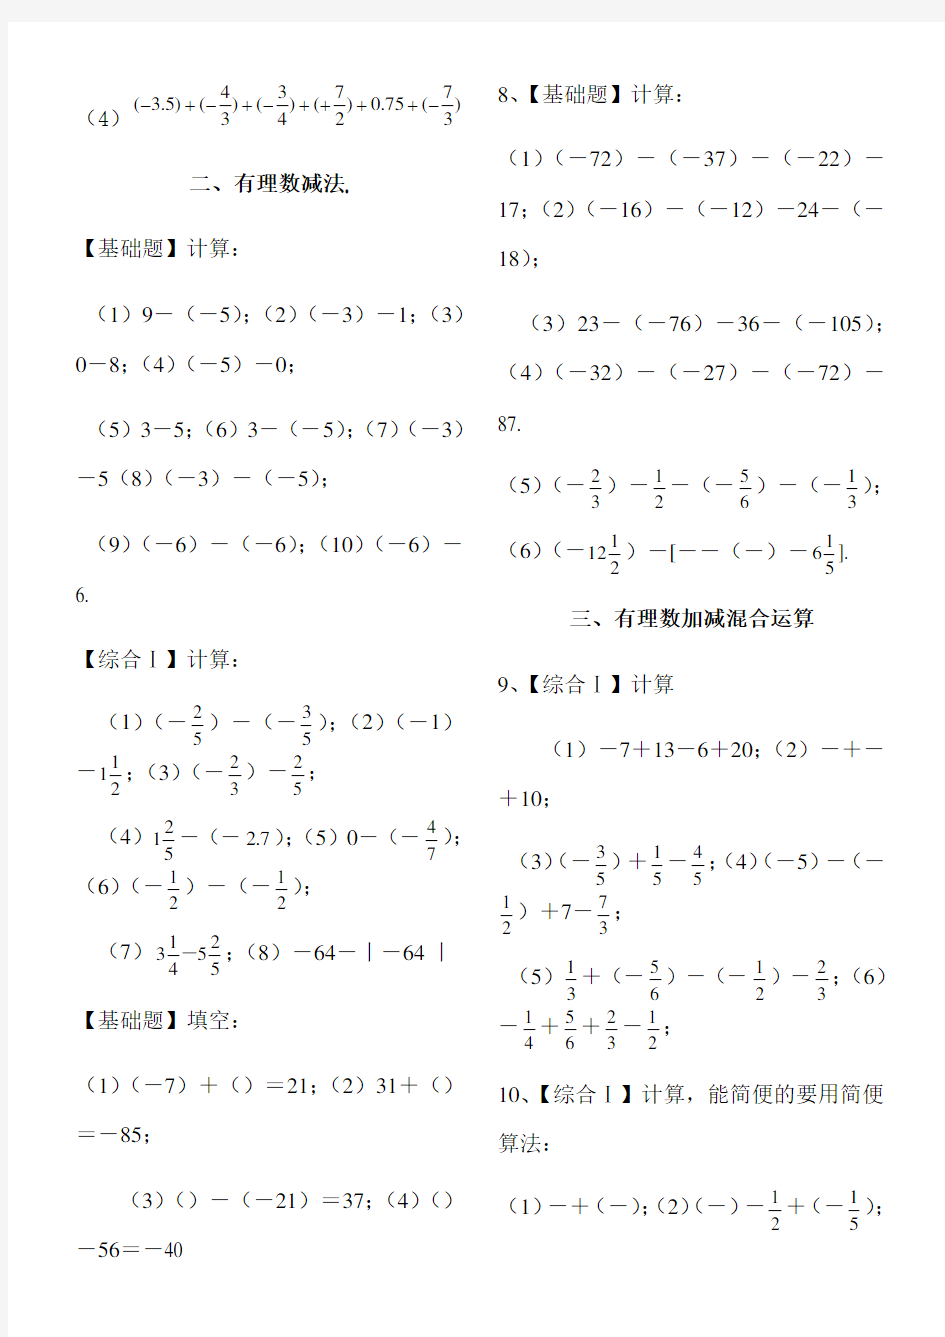 A4版有理数加减混合计算题100道【含答案】(七年级数学)